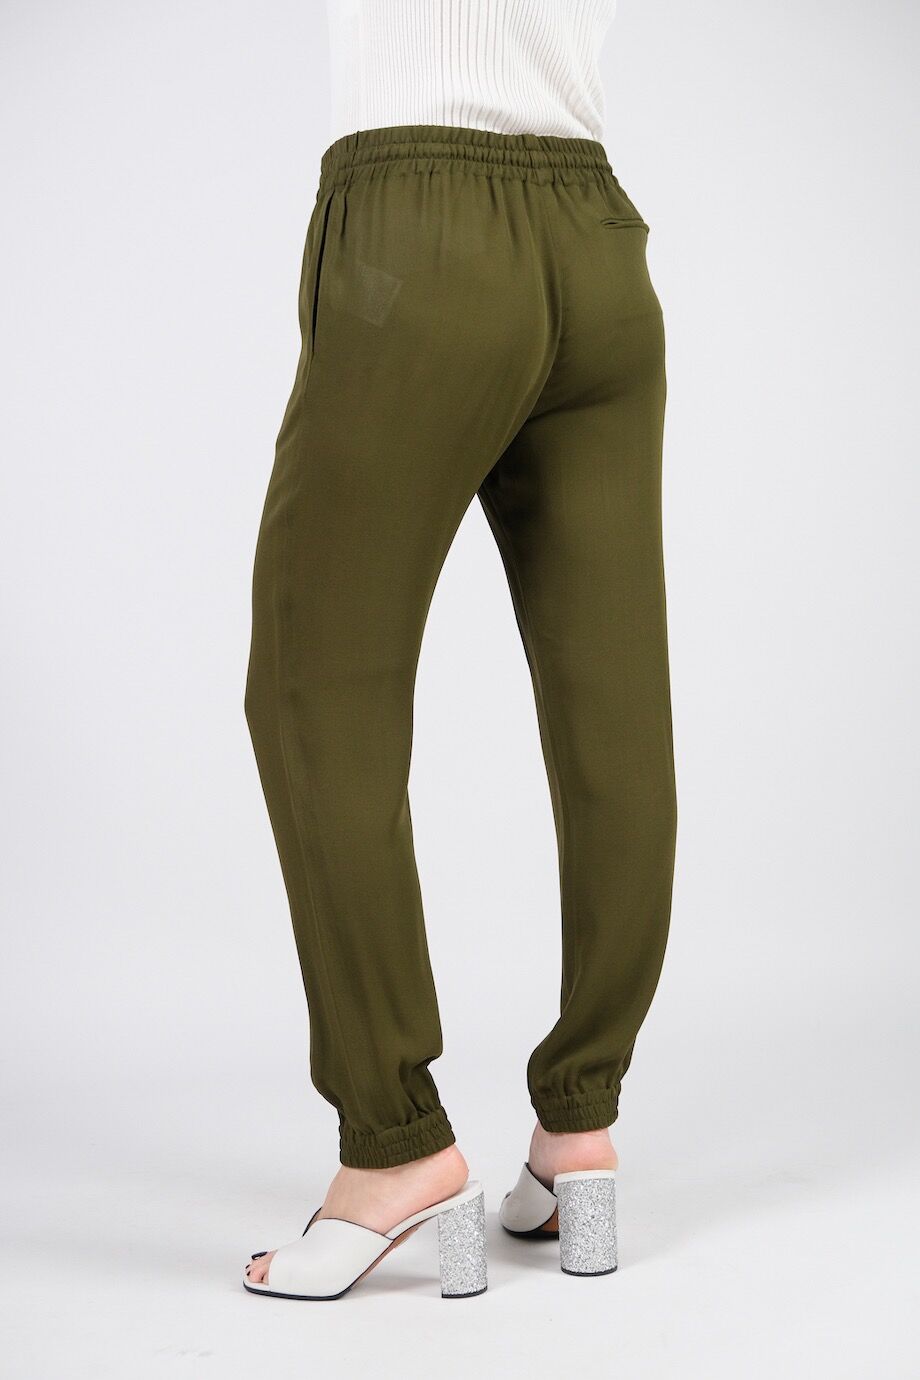 image 4 Шёлковые брюки болотного цвета на резинке